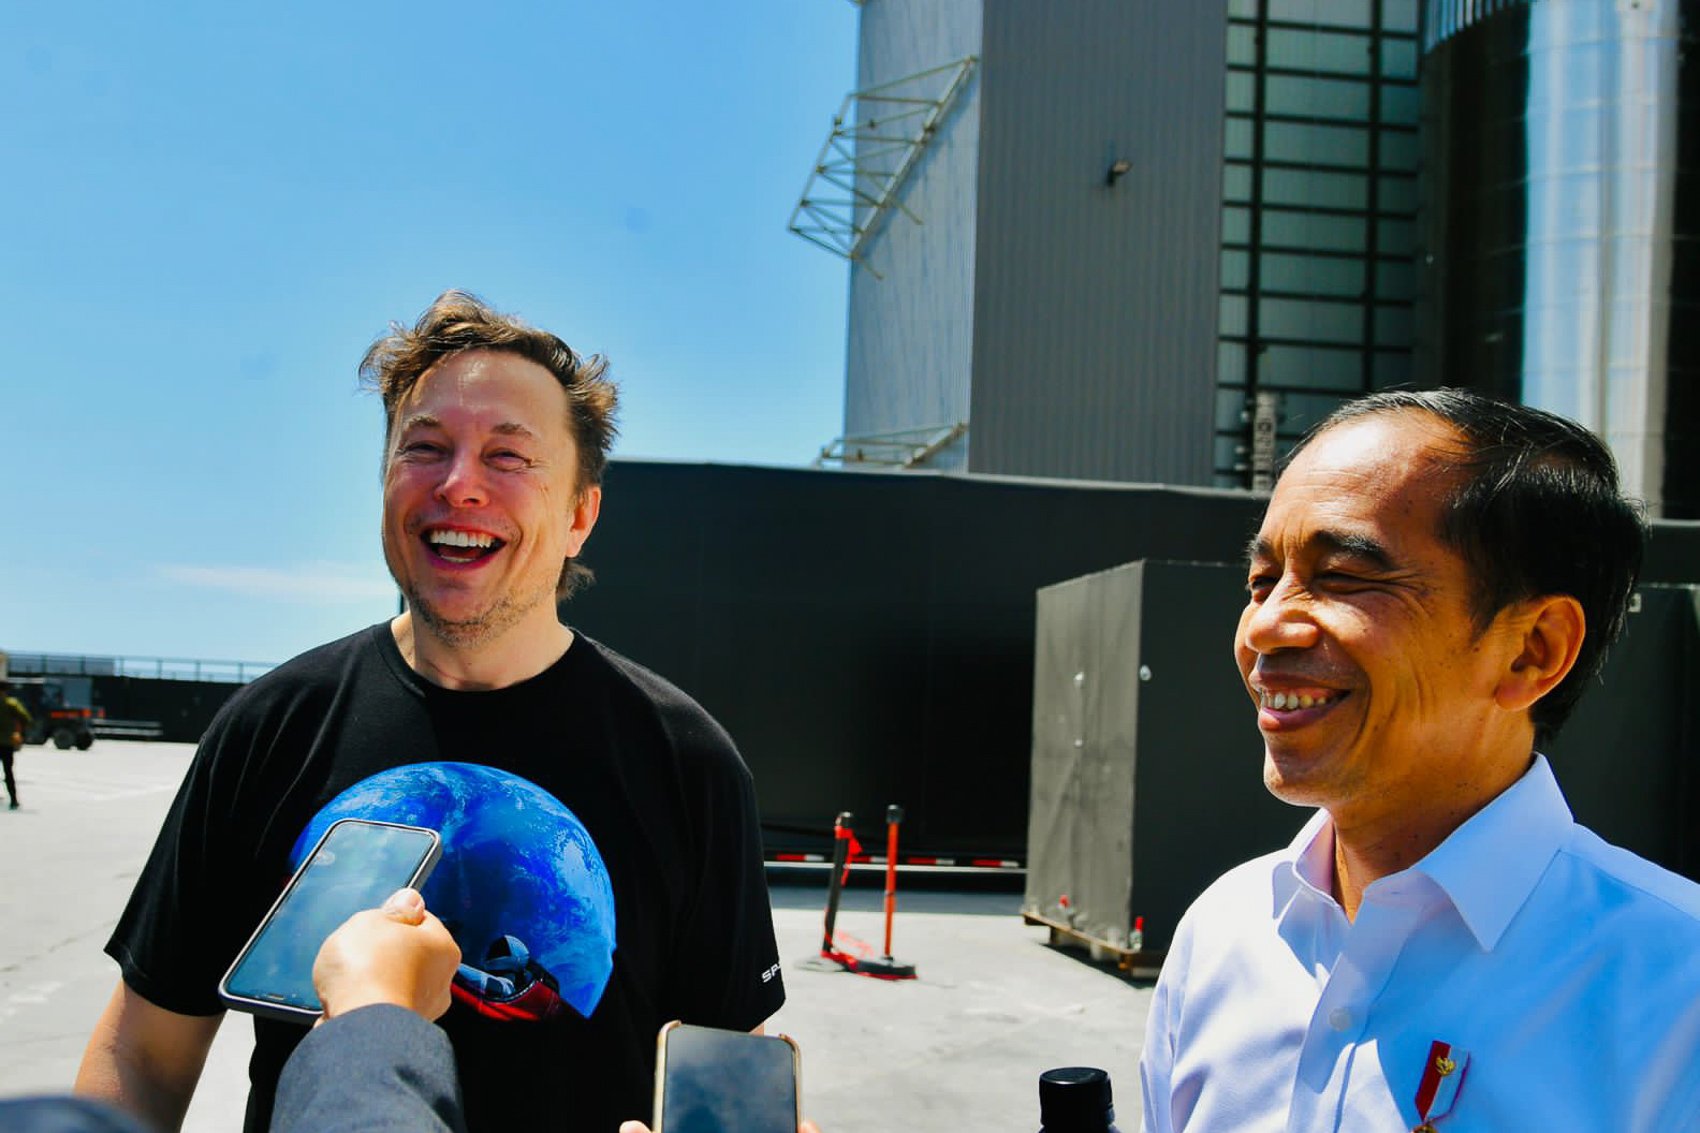 Presiden Joko Widodo berdiskusi dengan Elon Musk di Gedung Stargate Space X, Boca Chica, Amerika Serikat, Sabtu (14/05/2022). Dalam kunjungannya ke Space X di Boca Chica, AS, Presiden Jokowi mengundang Elon Musk untuk datang ke Indonesia. Menjawab undangan tersebut, Elon Musk mengatakan berencana datang ke Indonesia pada bulan November tahun ini.